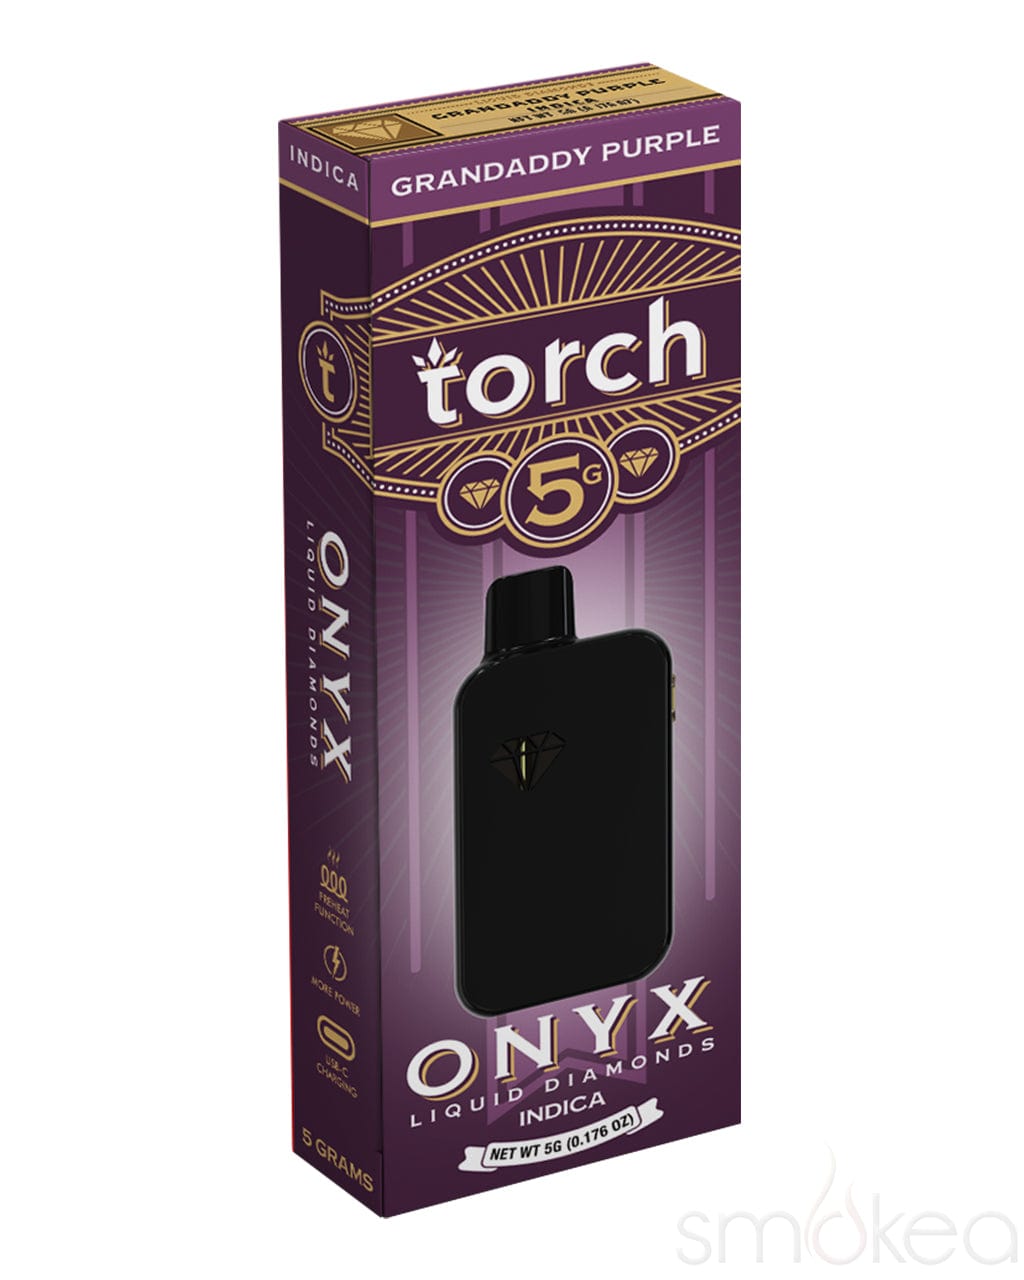 Torch 5g Onyx THCA Liquid Diamonds Vape - Grandaddy Purple